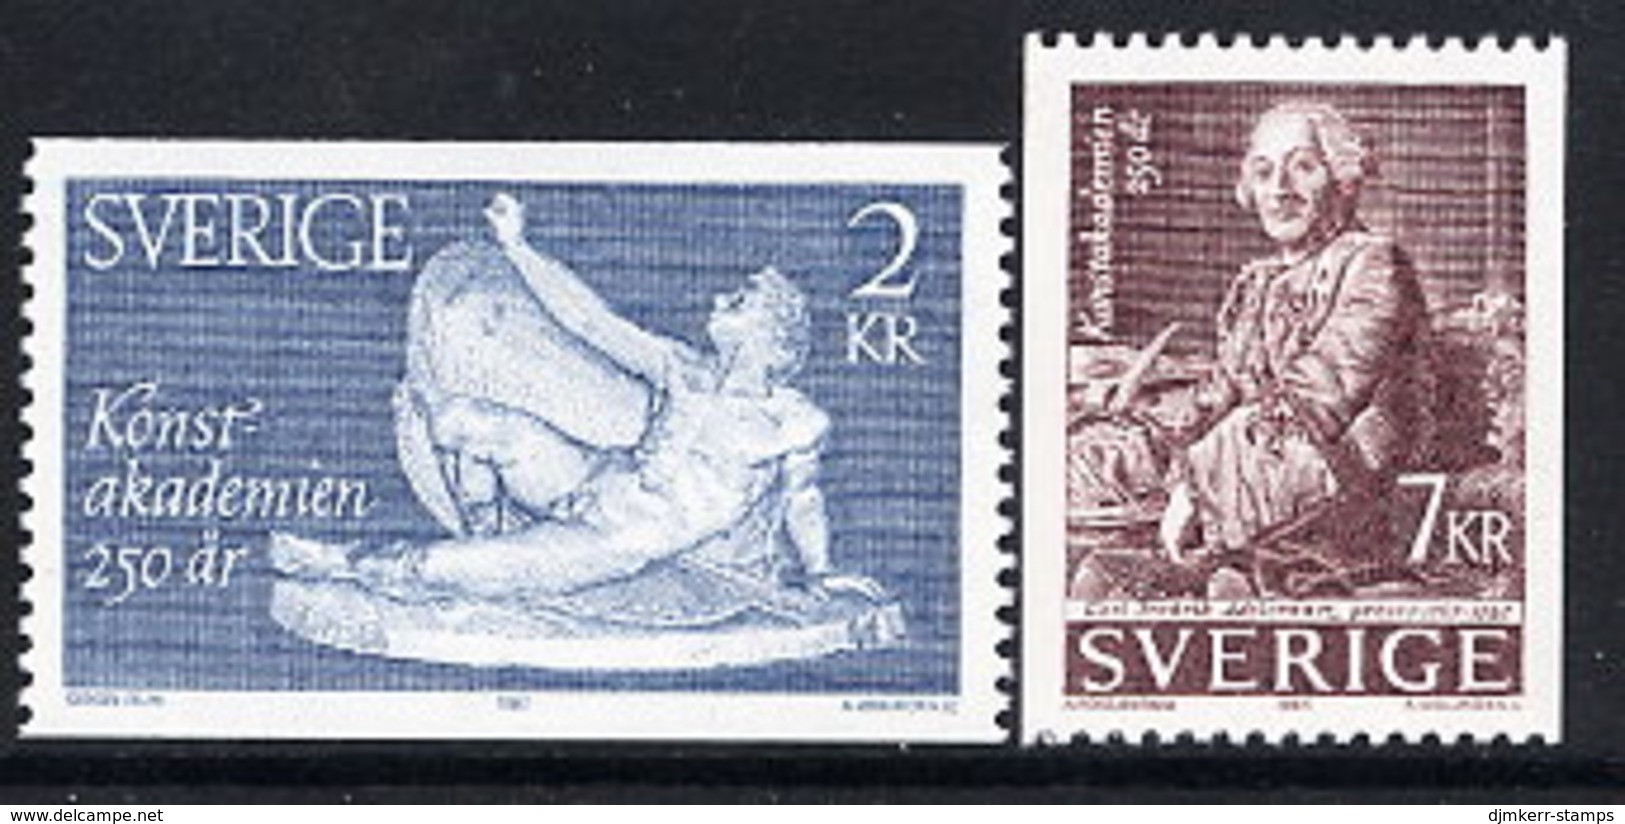 SWEDEN 1985 Academy Of Arts MNH / **.  Michel 1347-48 - Nuevos